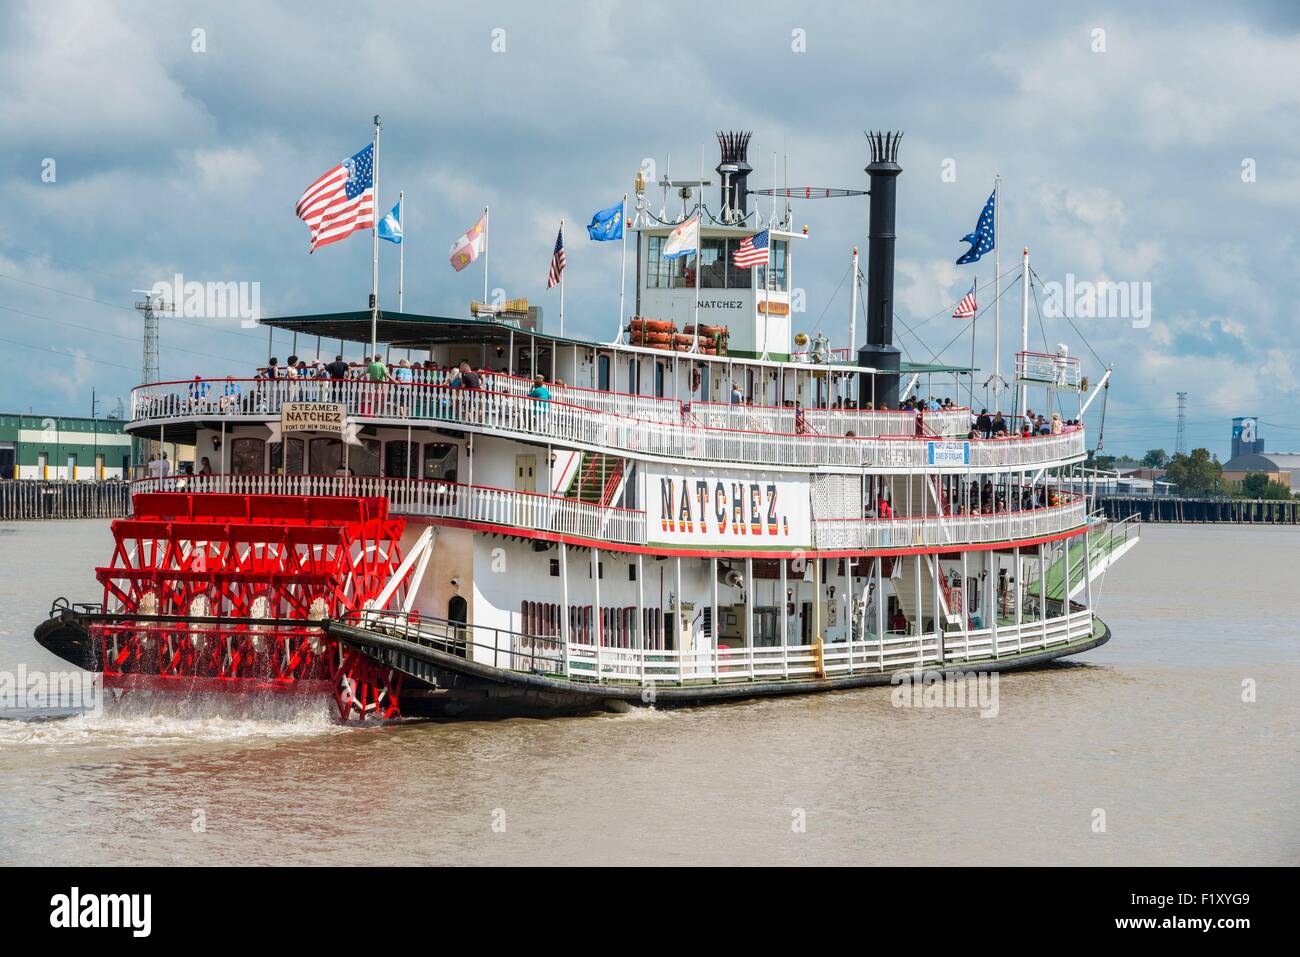 Etats-unis, Louisiane, Nouvelle Orléans, le Natchez à vapeur sur le fleuve Mississippi Banque D'Images